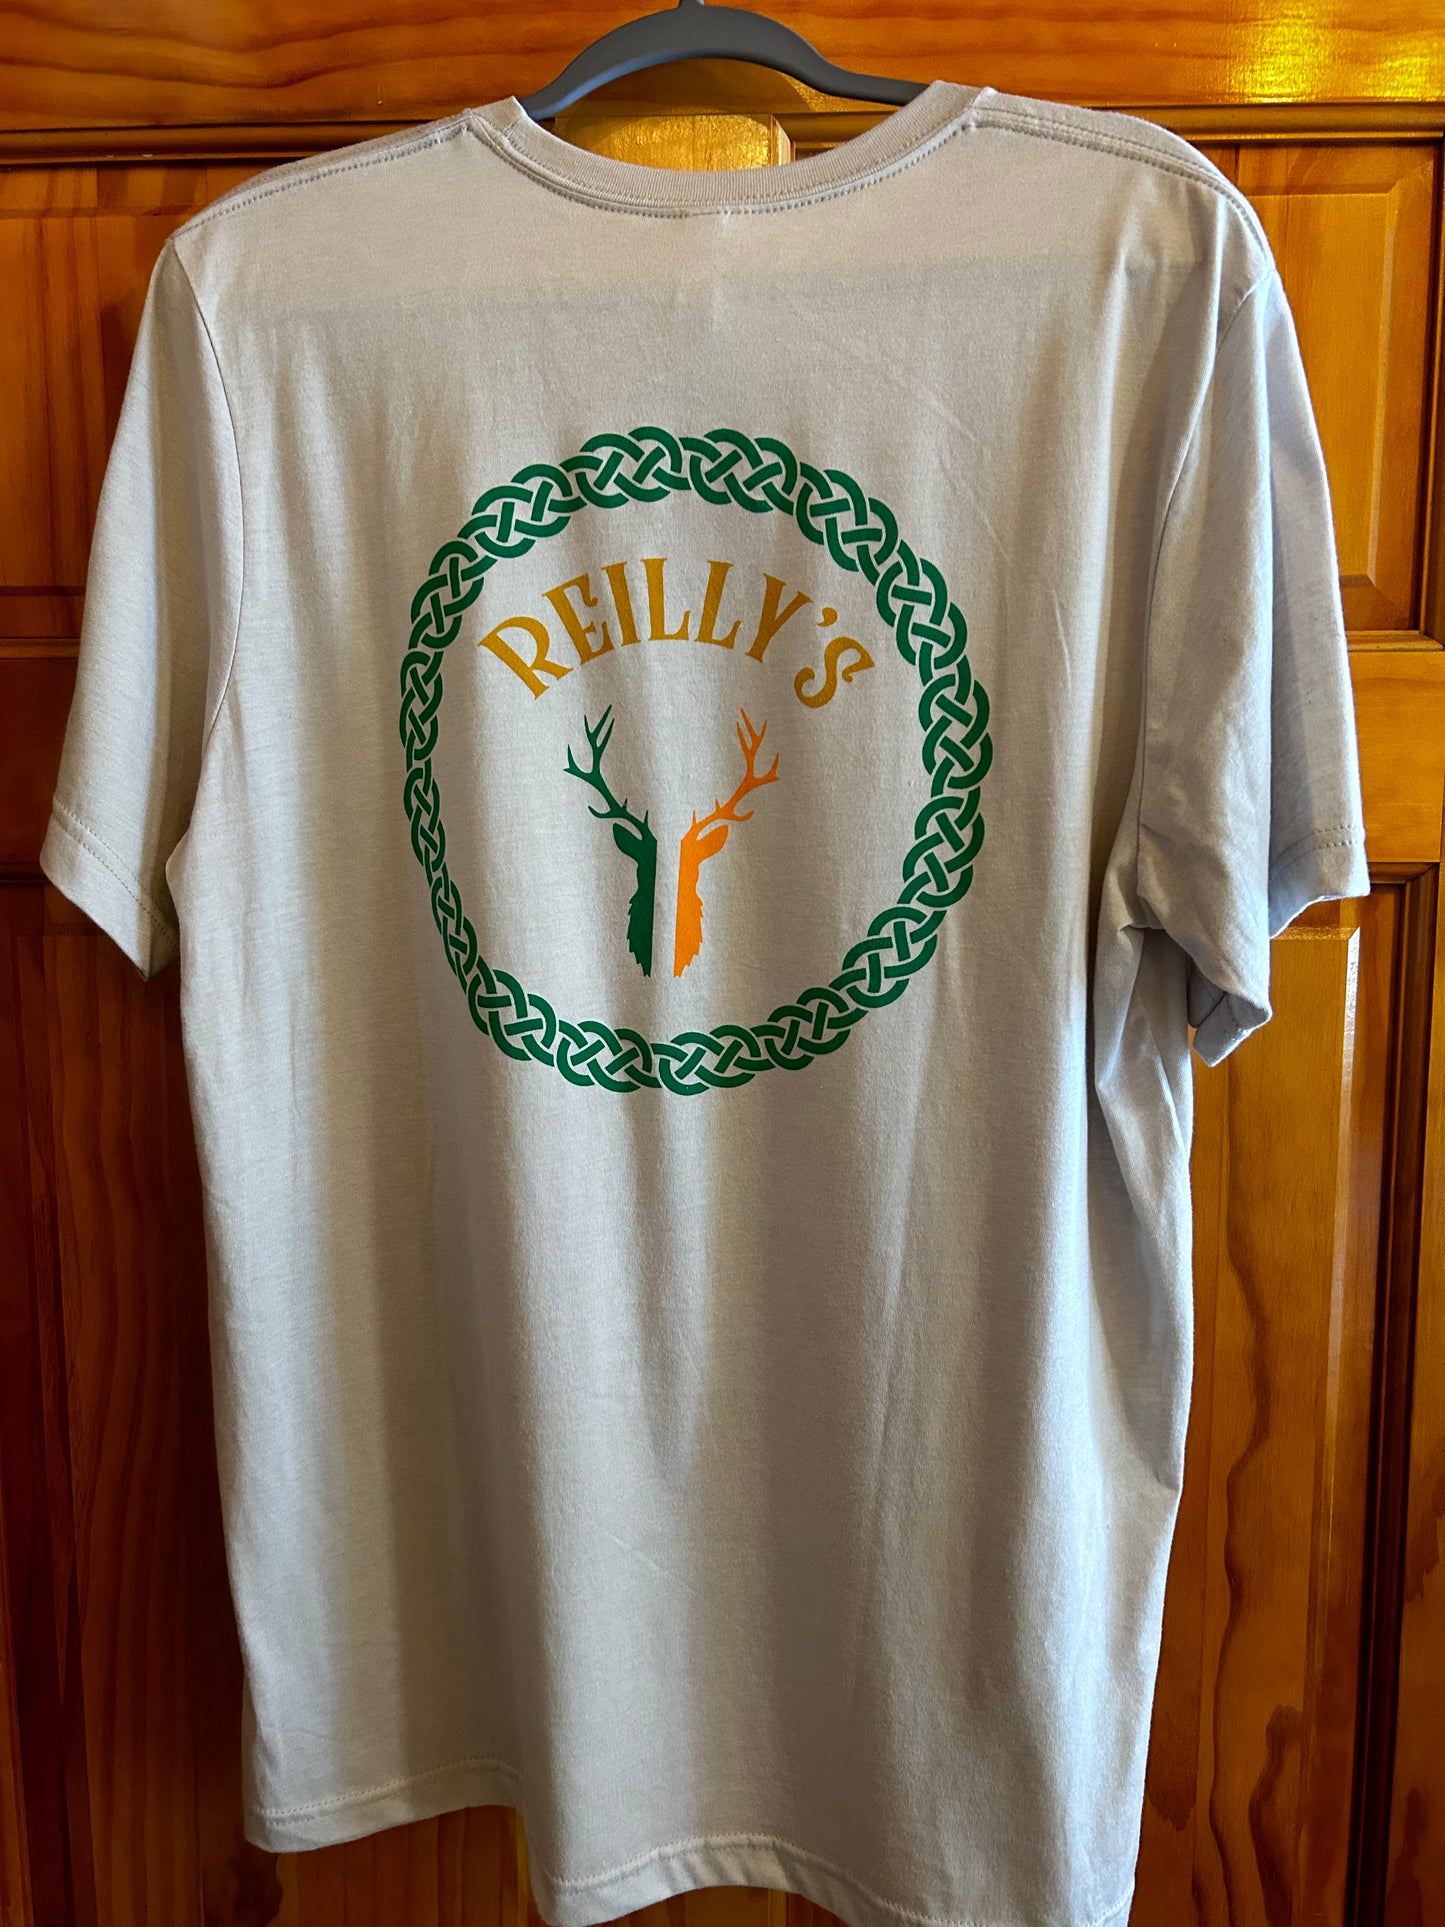 REILLY'S T-Shirt